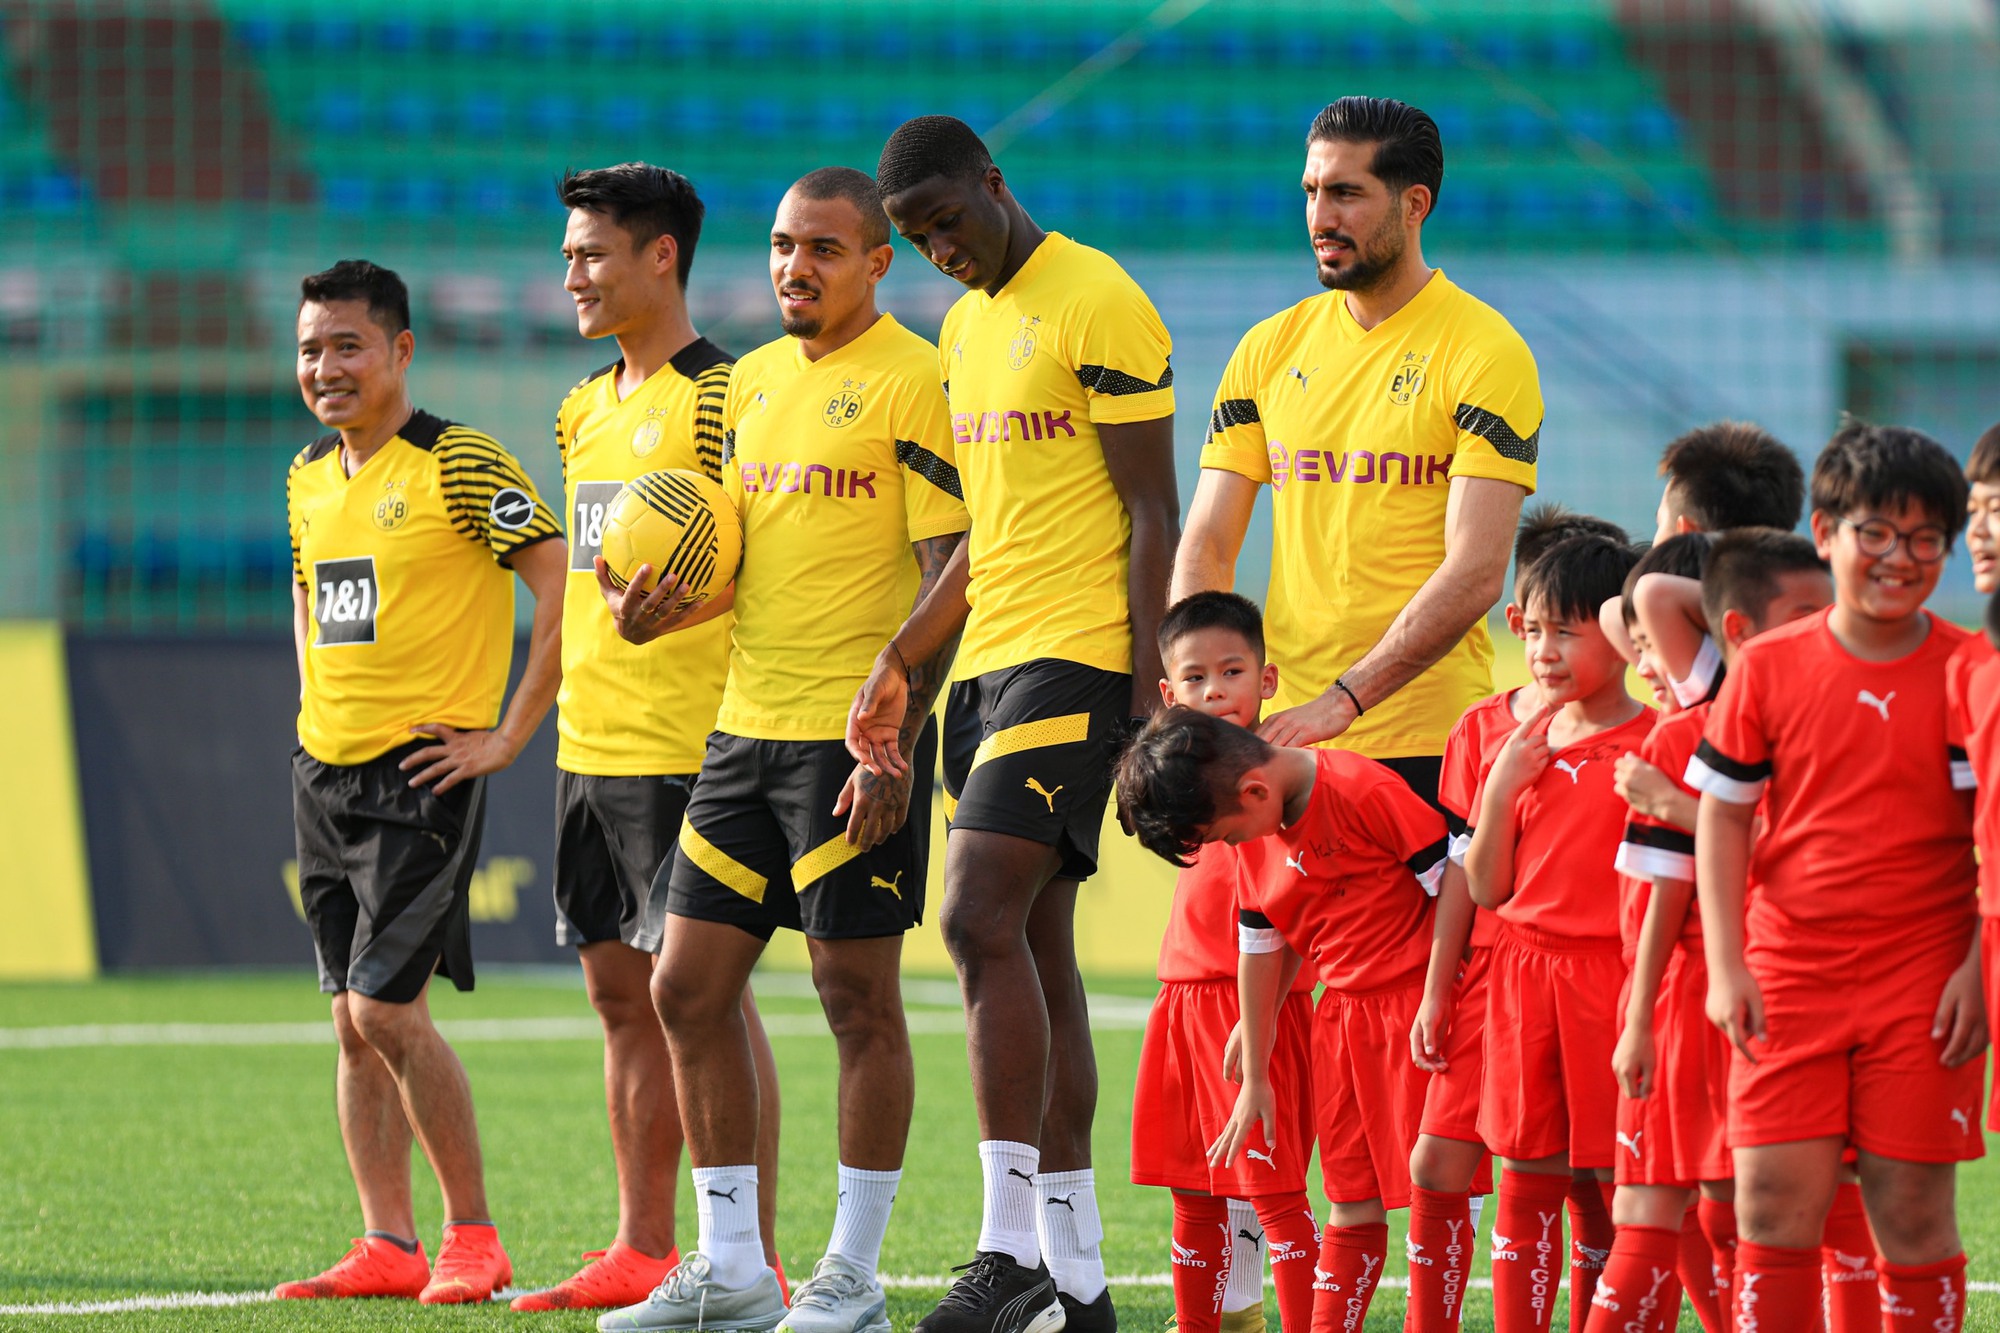 Danh thủ Hồng Sơn và Mạc Hồng Quân cùng dàn sao Dortmund "trắng tay" trong trận giao hữu trước các cầu thủ nhí Việt Nam-1